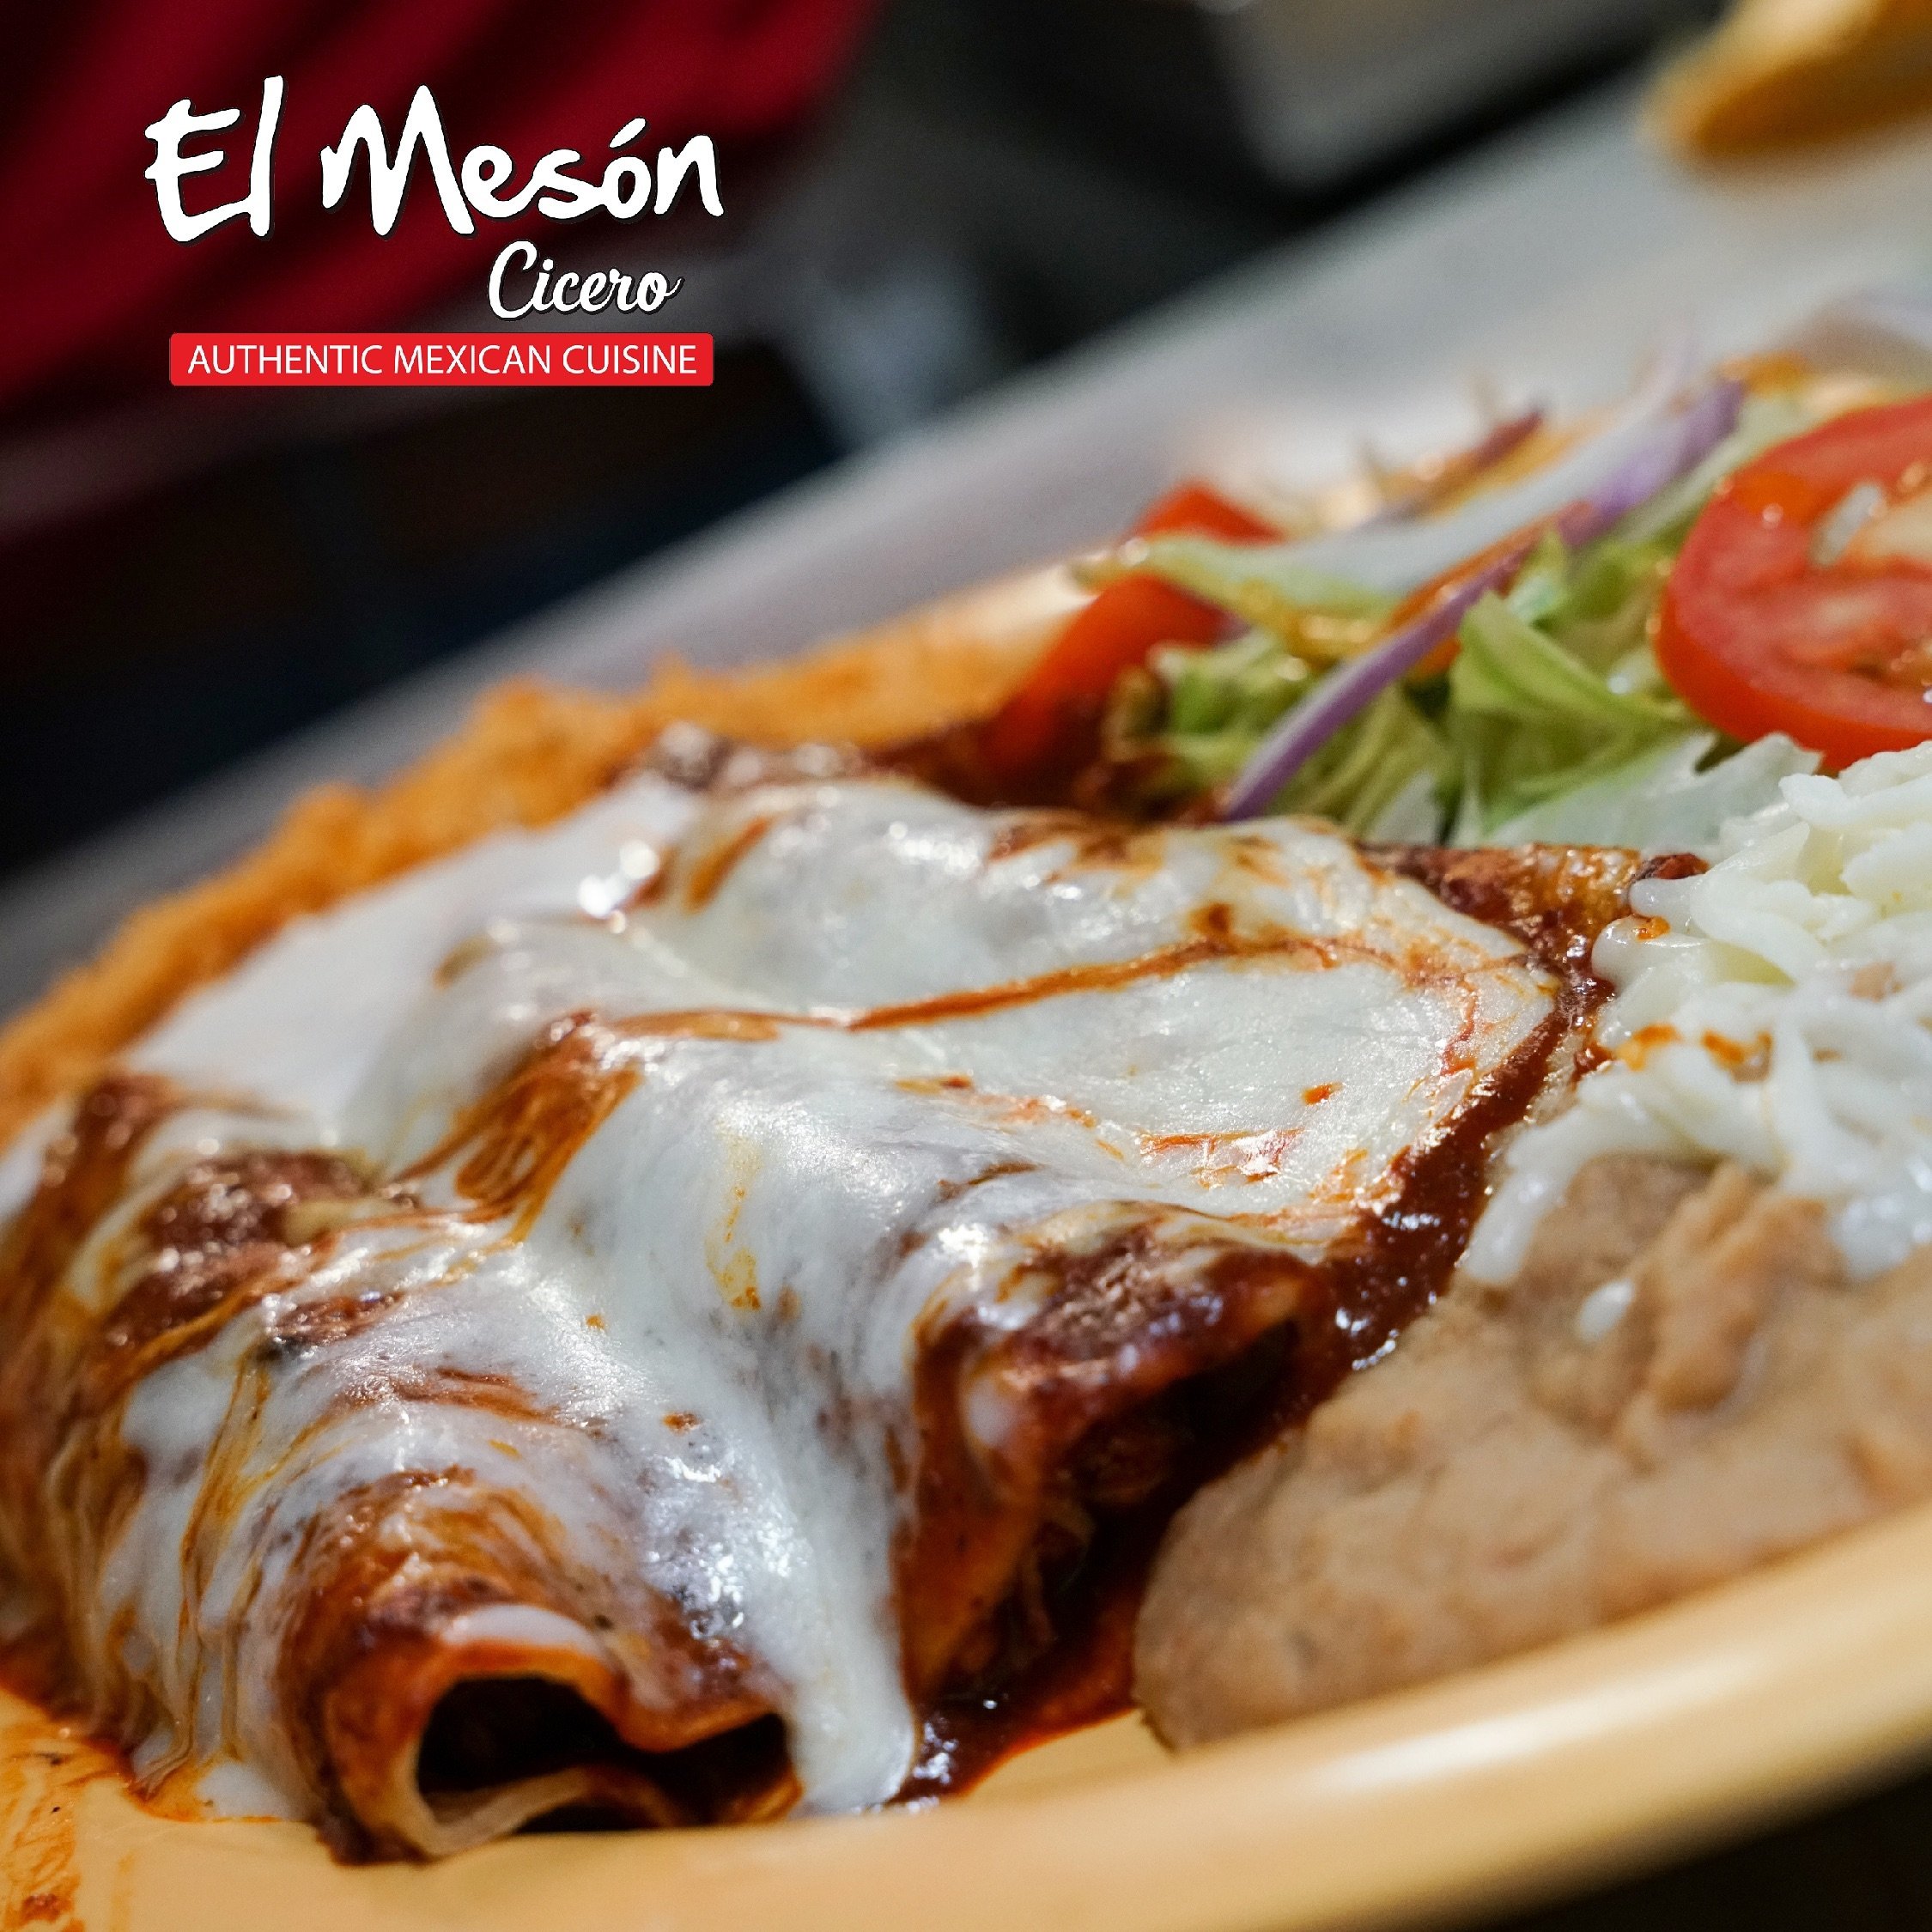 Vengan a probar autenticos platillos #Mexicanos 🇲🇽🌵 Cerramos hasta la 1 de la ma&ntilde;ana hoy lunes, los esperamos! 
📍5710 W Cermak Rd, C&iacute;cero, IL
.
.
.
#meson #ciceroil #berwynil #oakparkil #carneasada #steak #grill #quesadillas #cheese